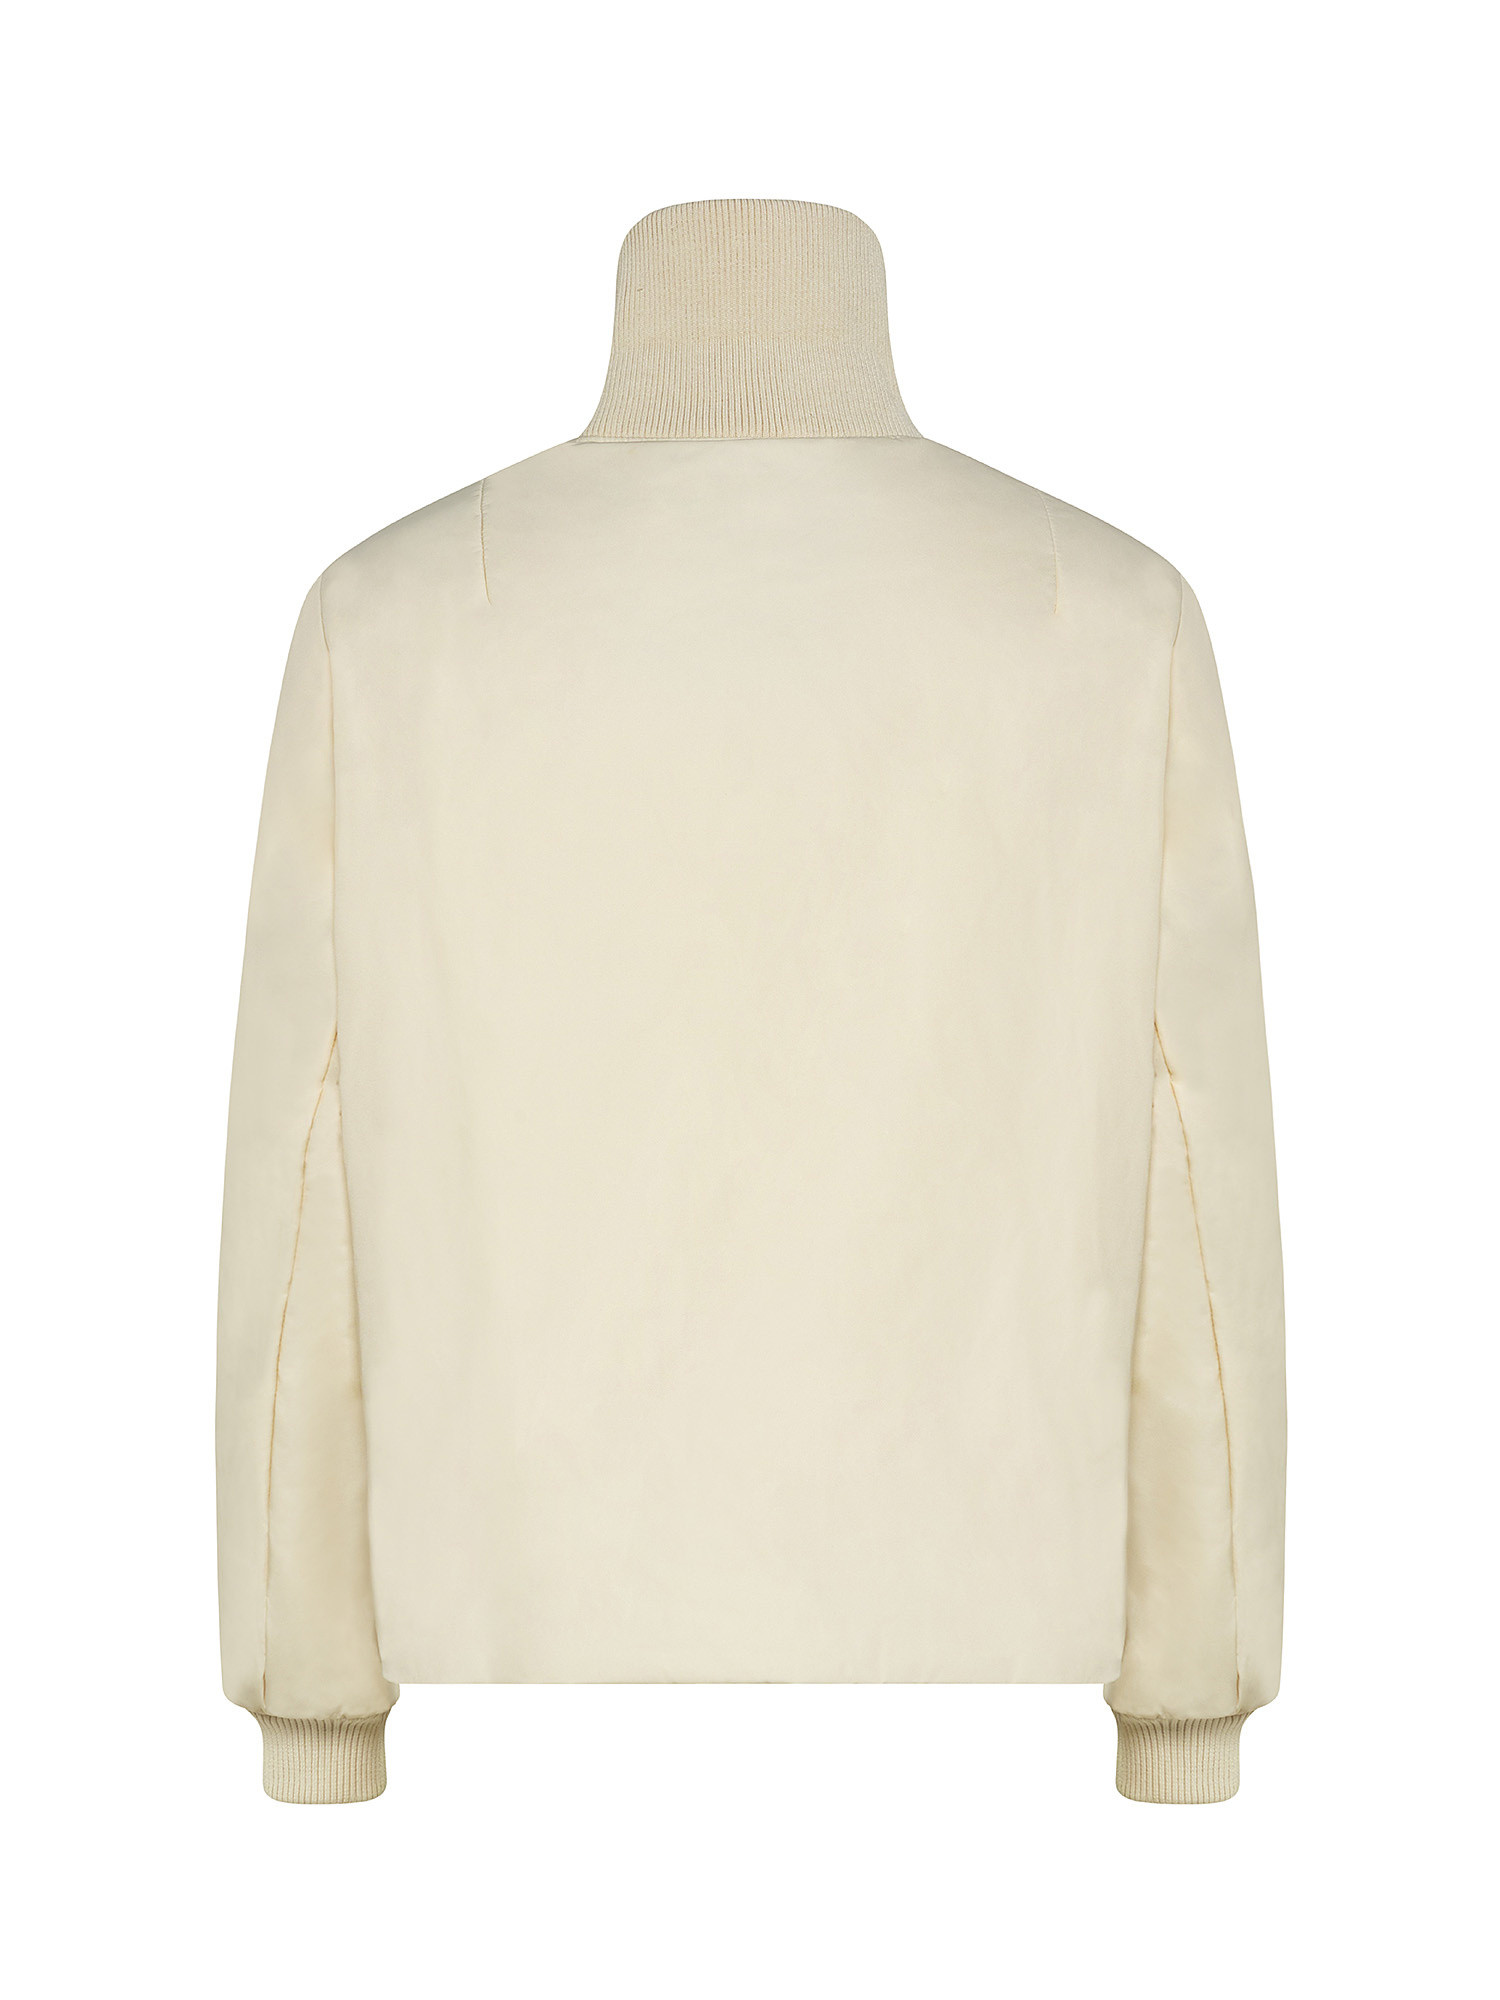 Short padded jacket, White, large image number 1